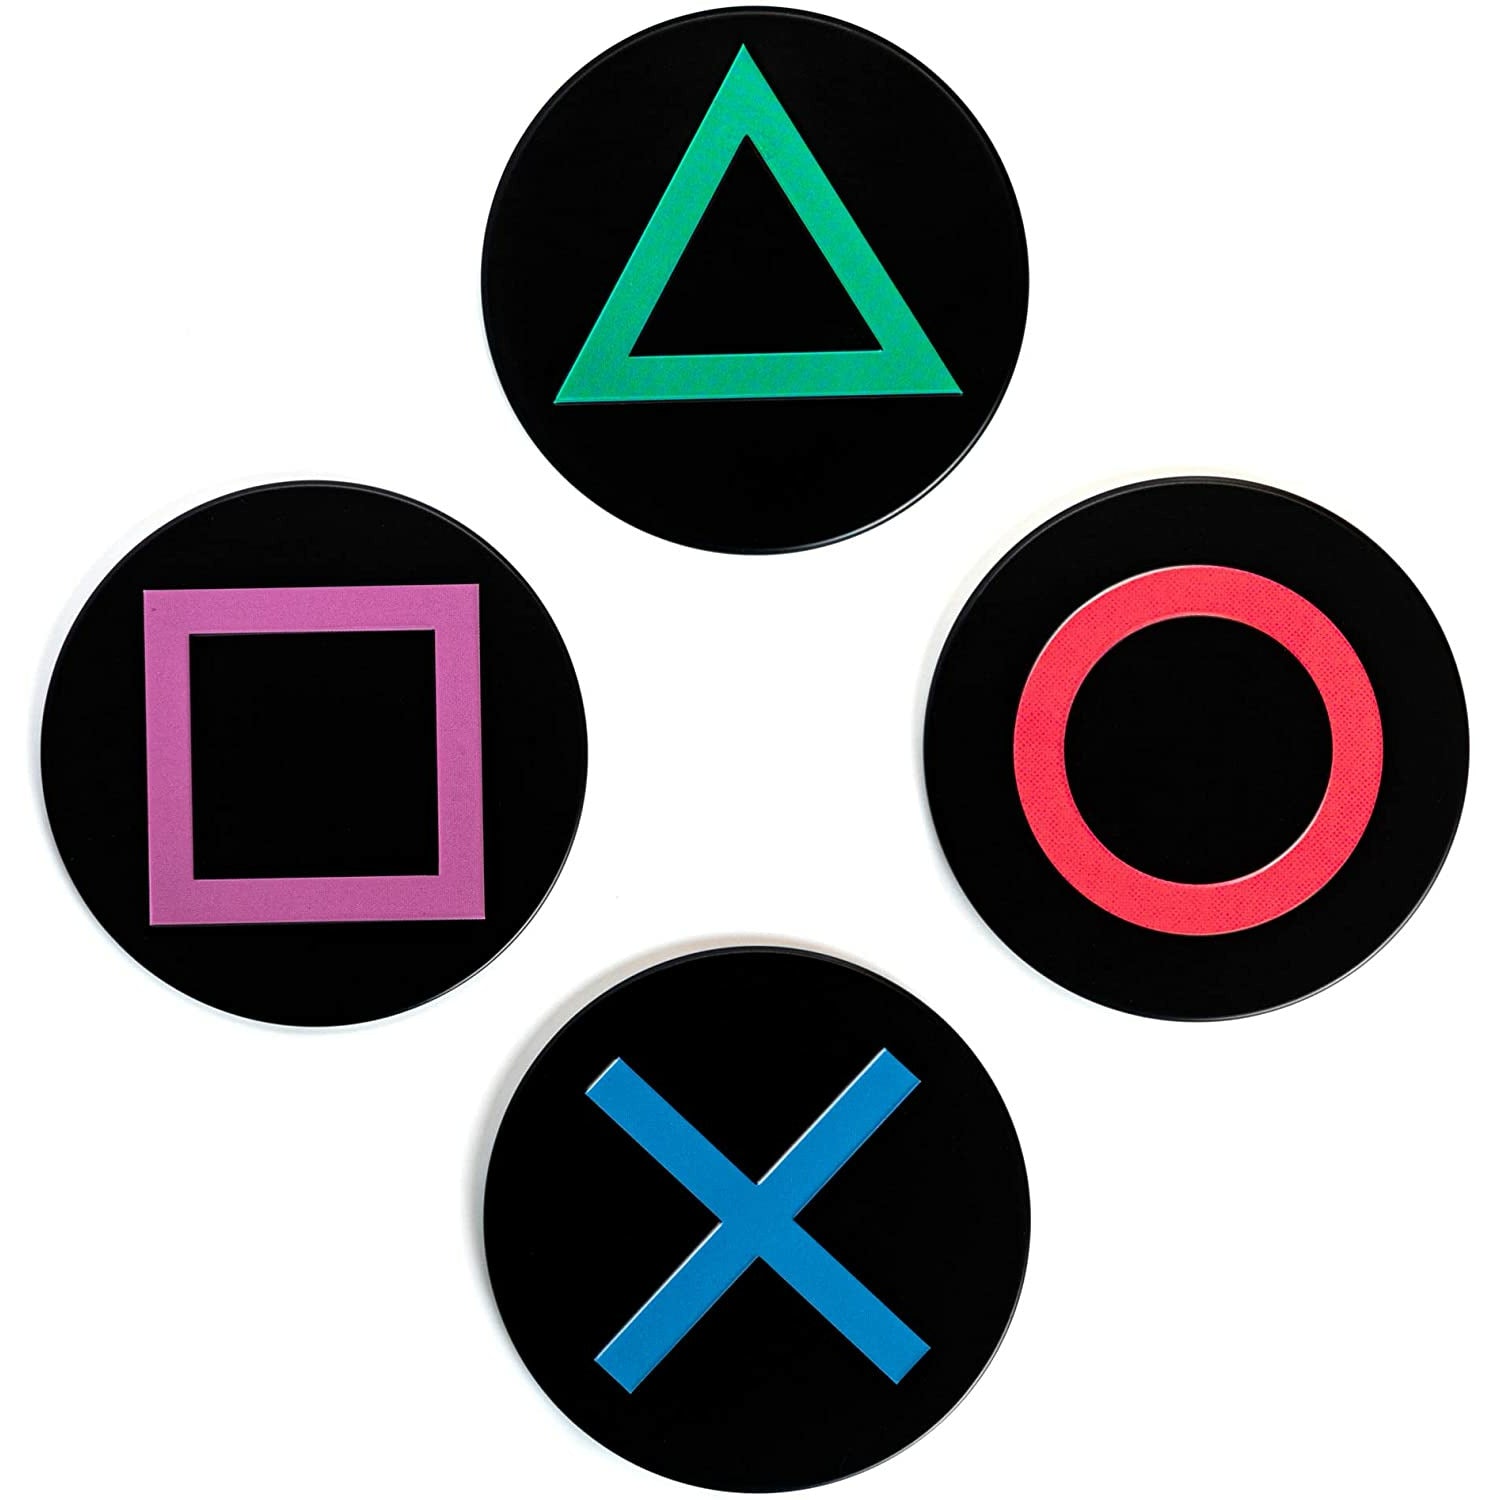 Portavasos de metal modelo iconos del Playstation - Gshop Pty